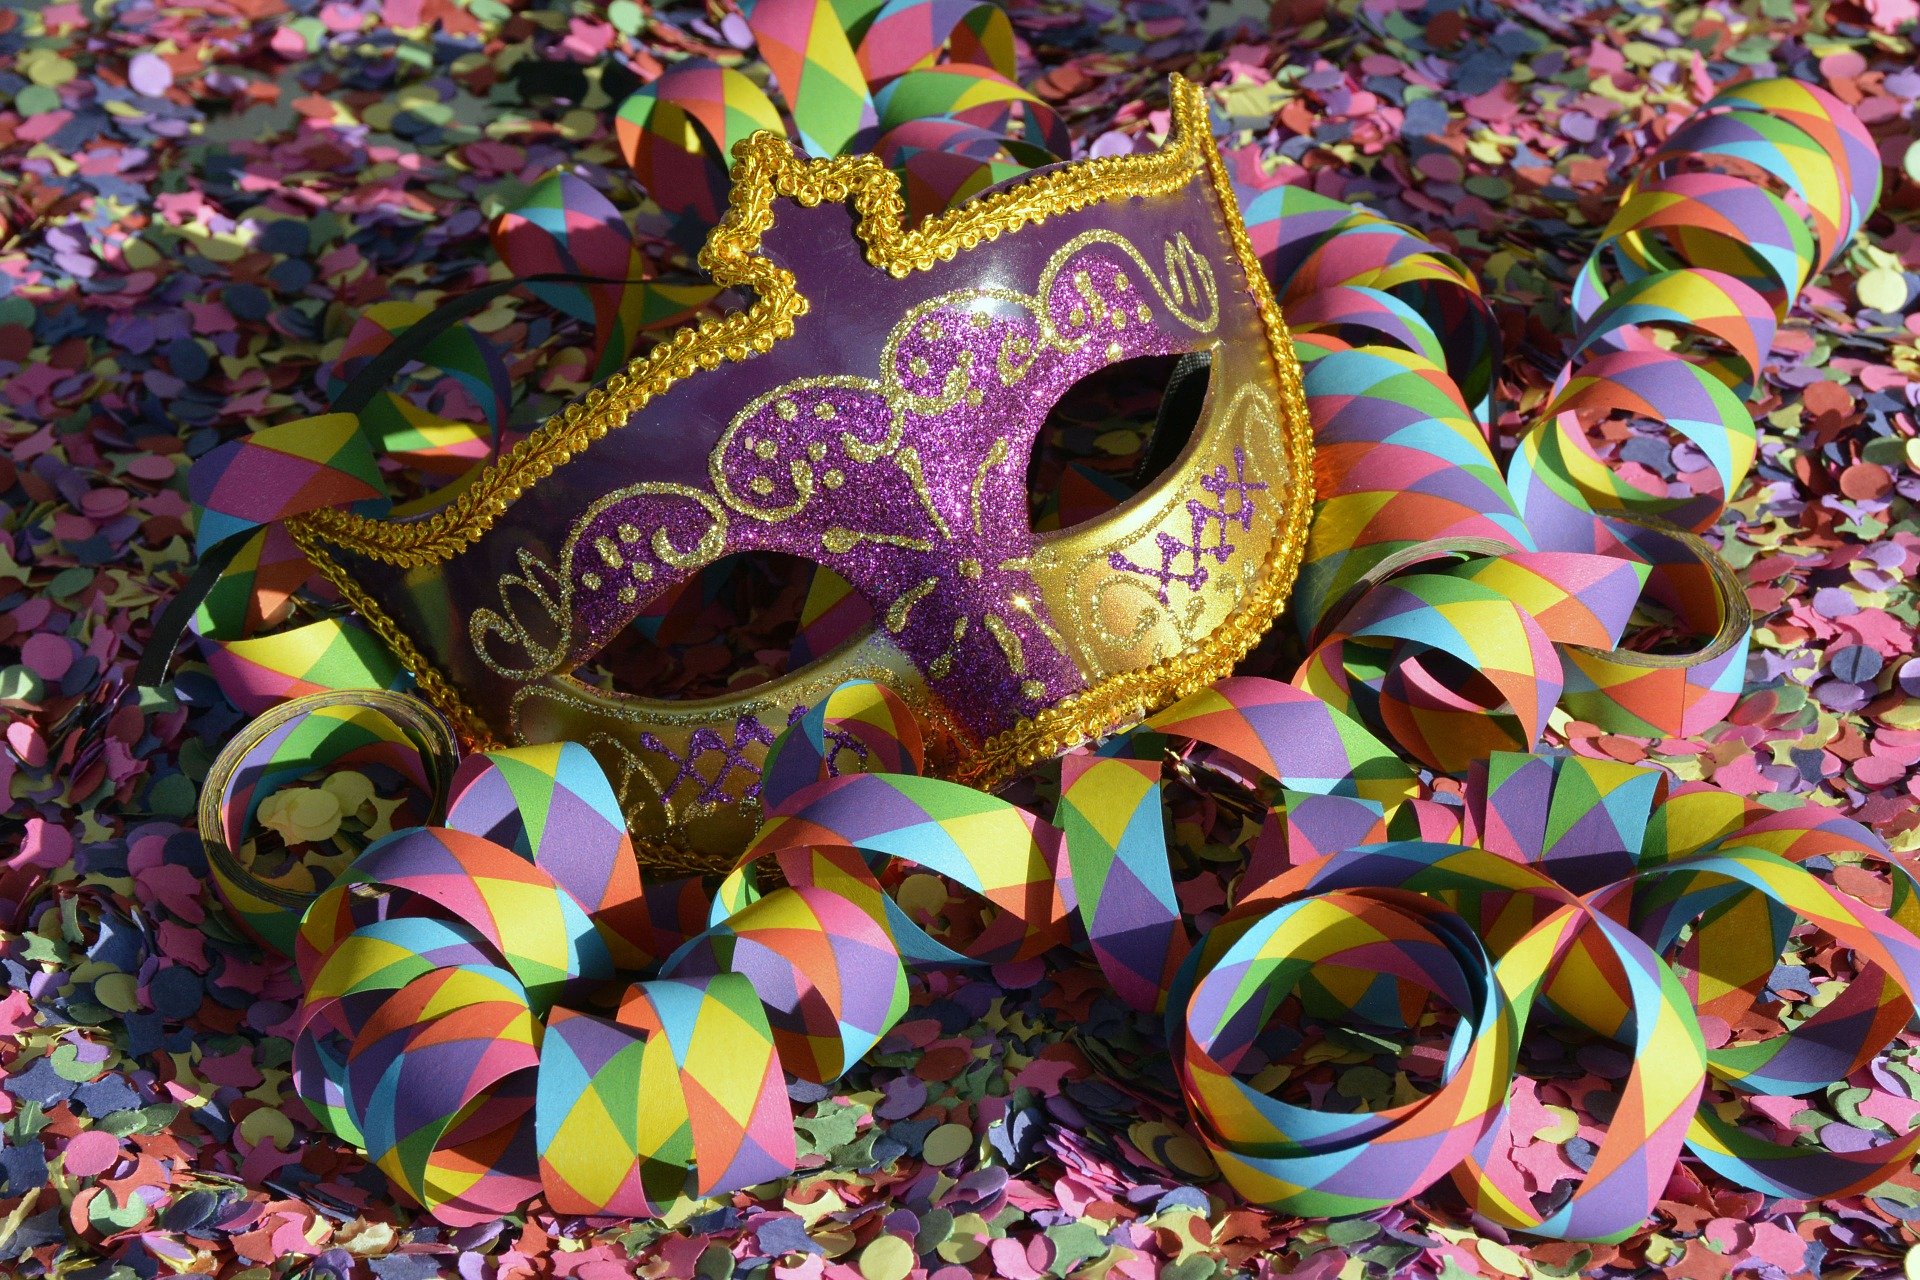  Repense BandNews: a história do Carnaval curitibano